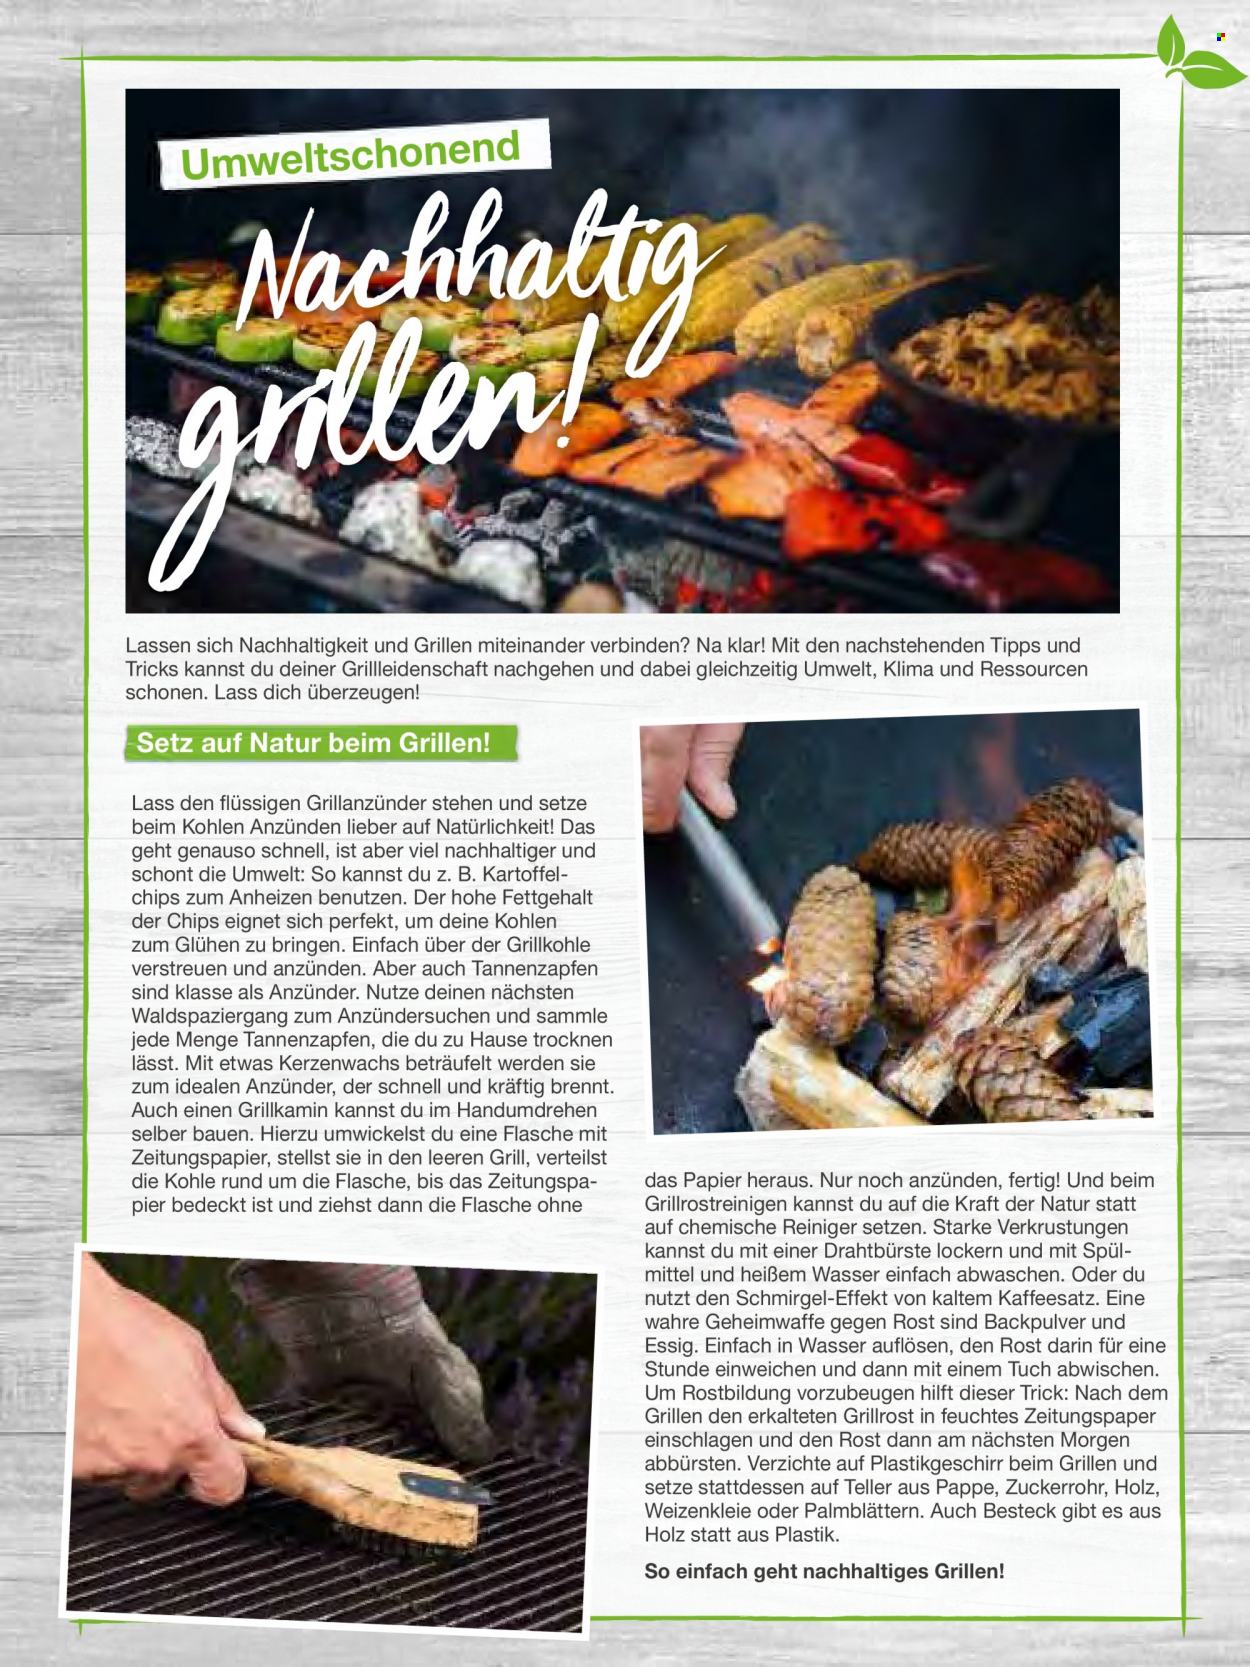 thumbnail - Prospekte toom Baumarkt - Produkte in Aktion - Reiniger, Besteck, Teller, Grill, Grillkohle, Grillanzünder. Seite 126.